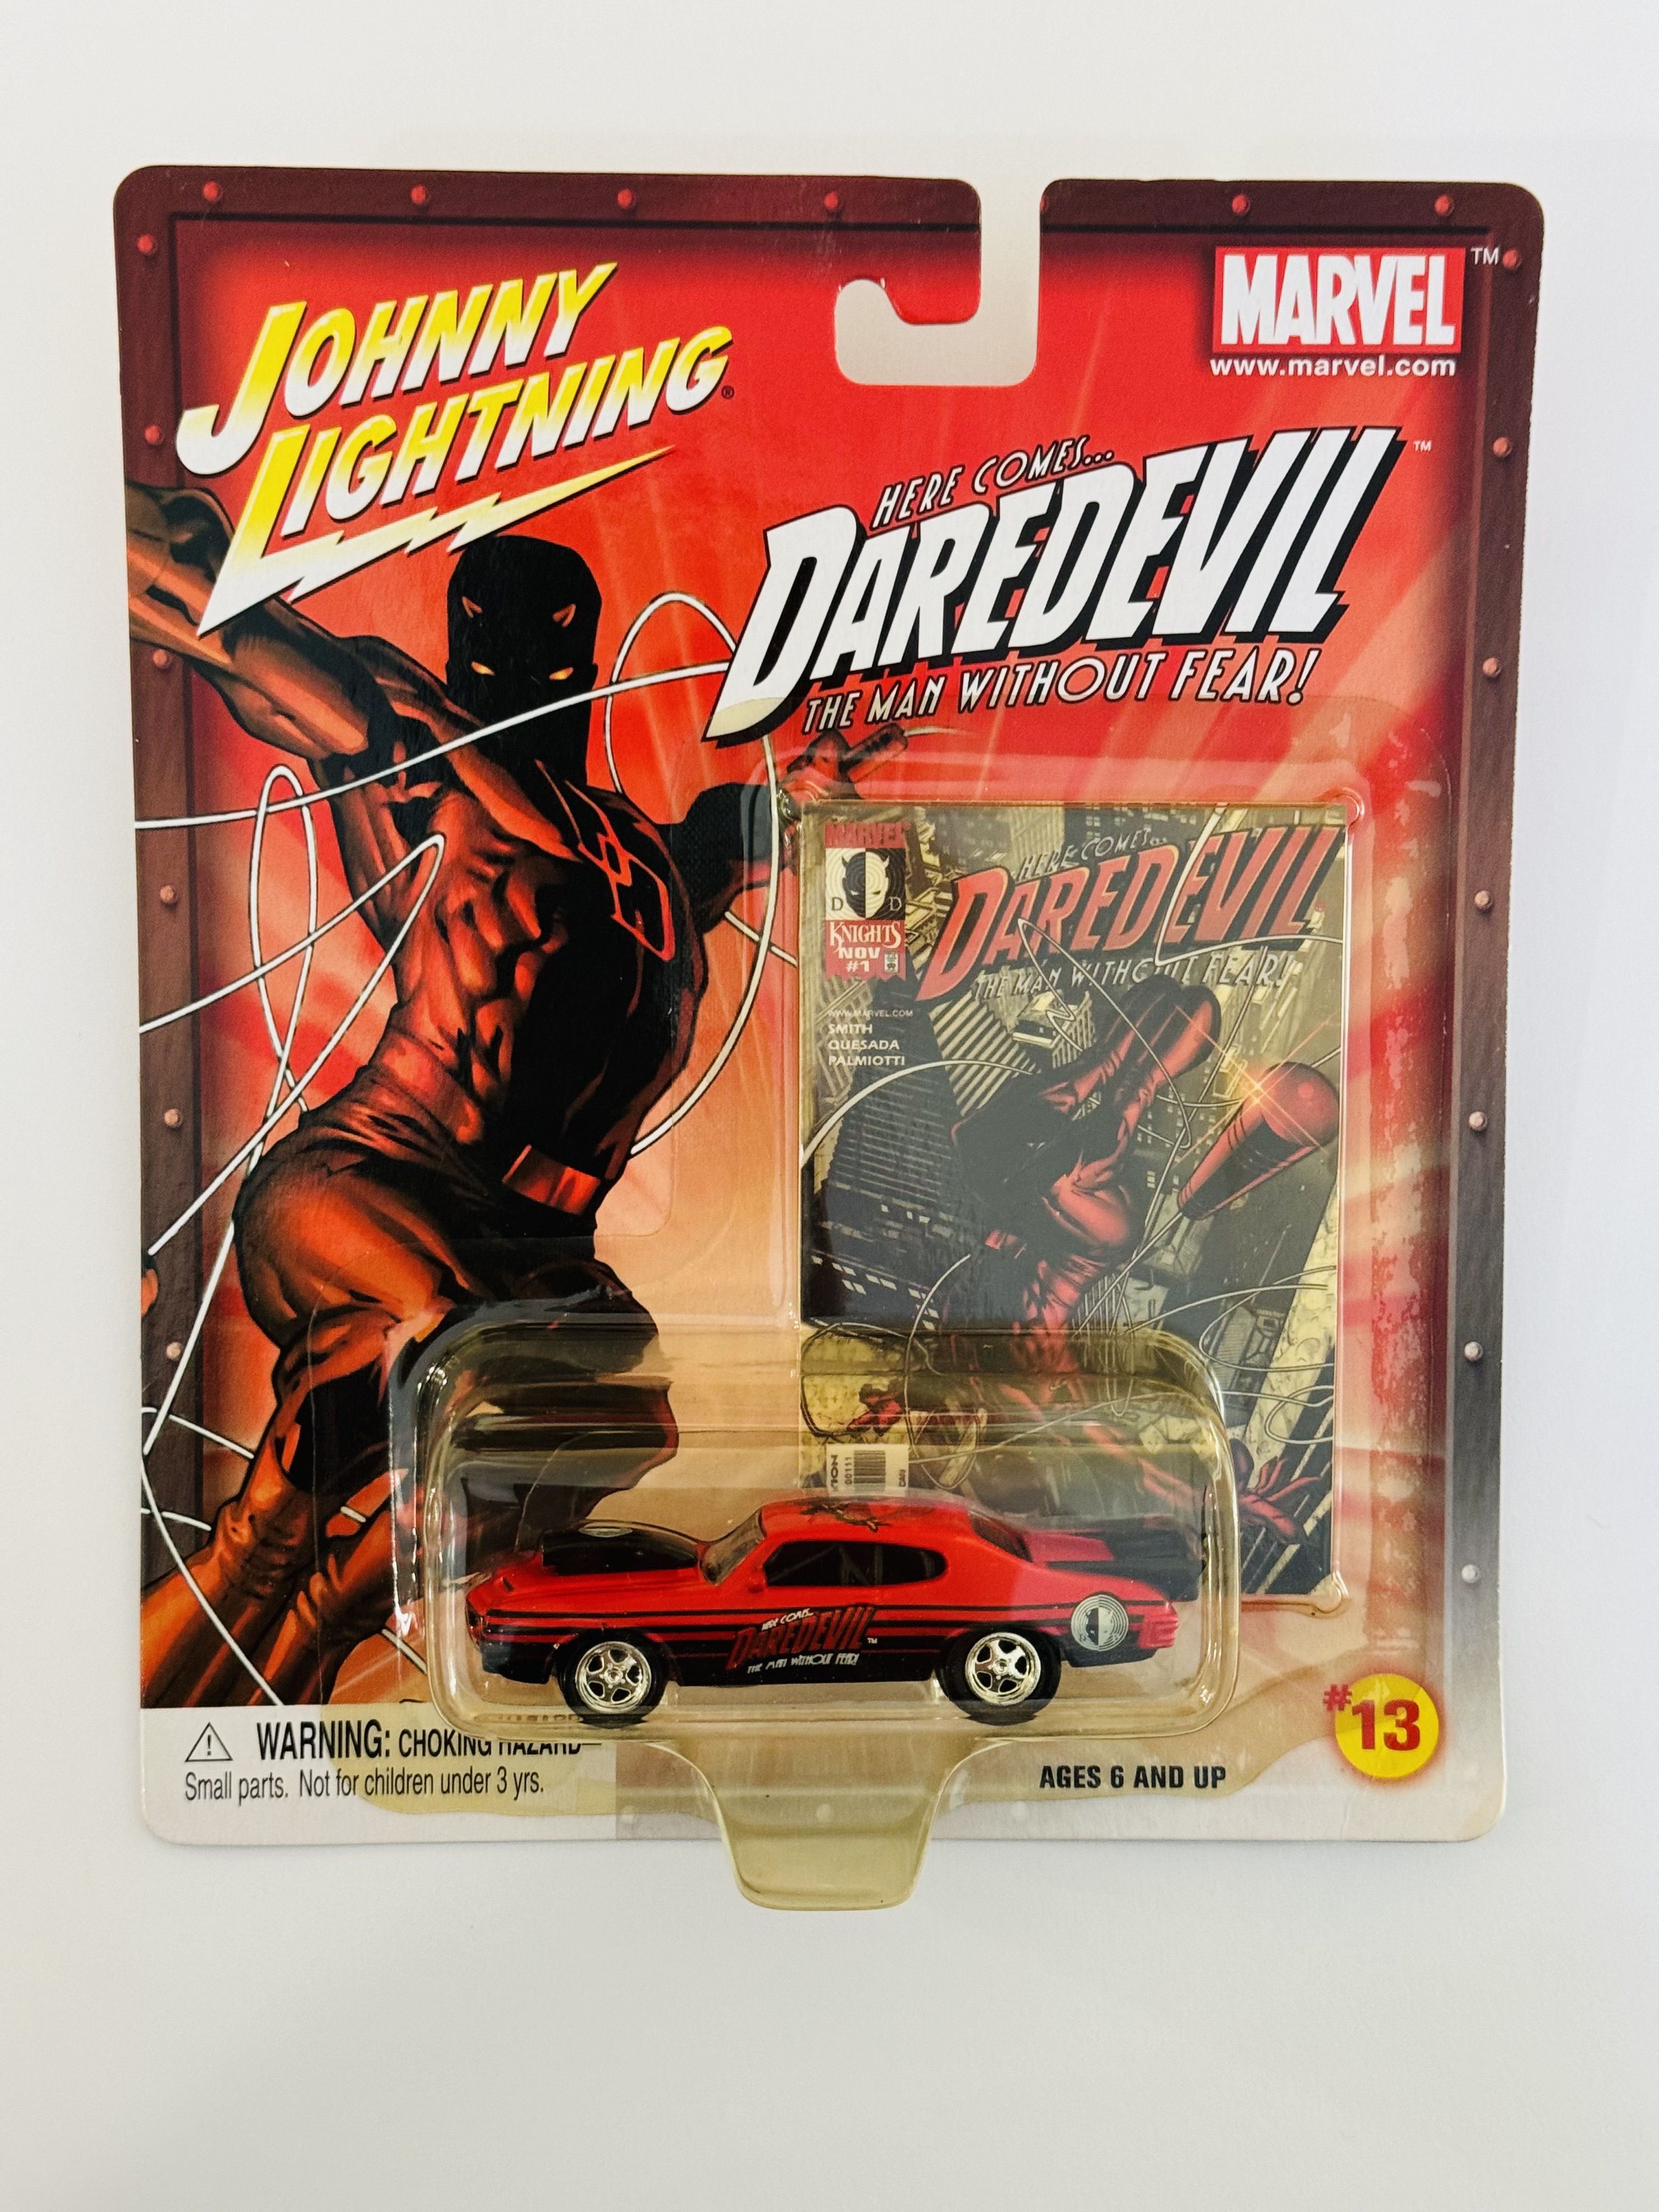 Johnny Lightning Daredevil '72 GTO Pro Stock